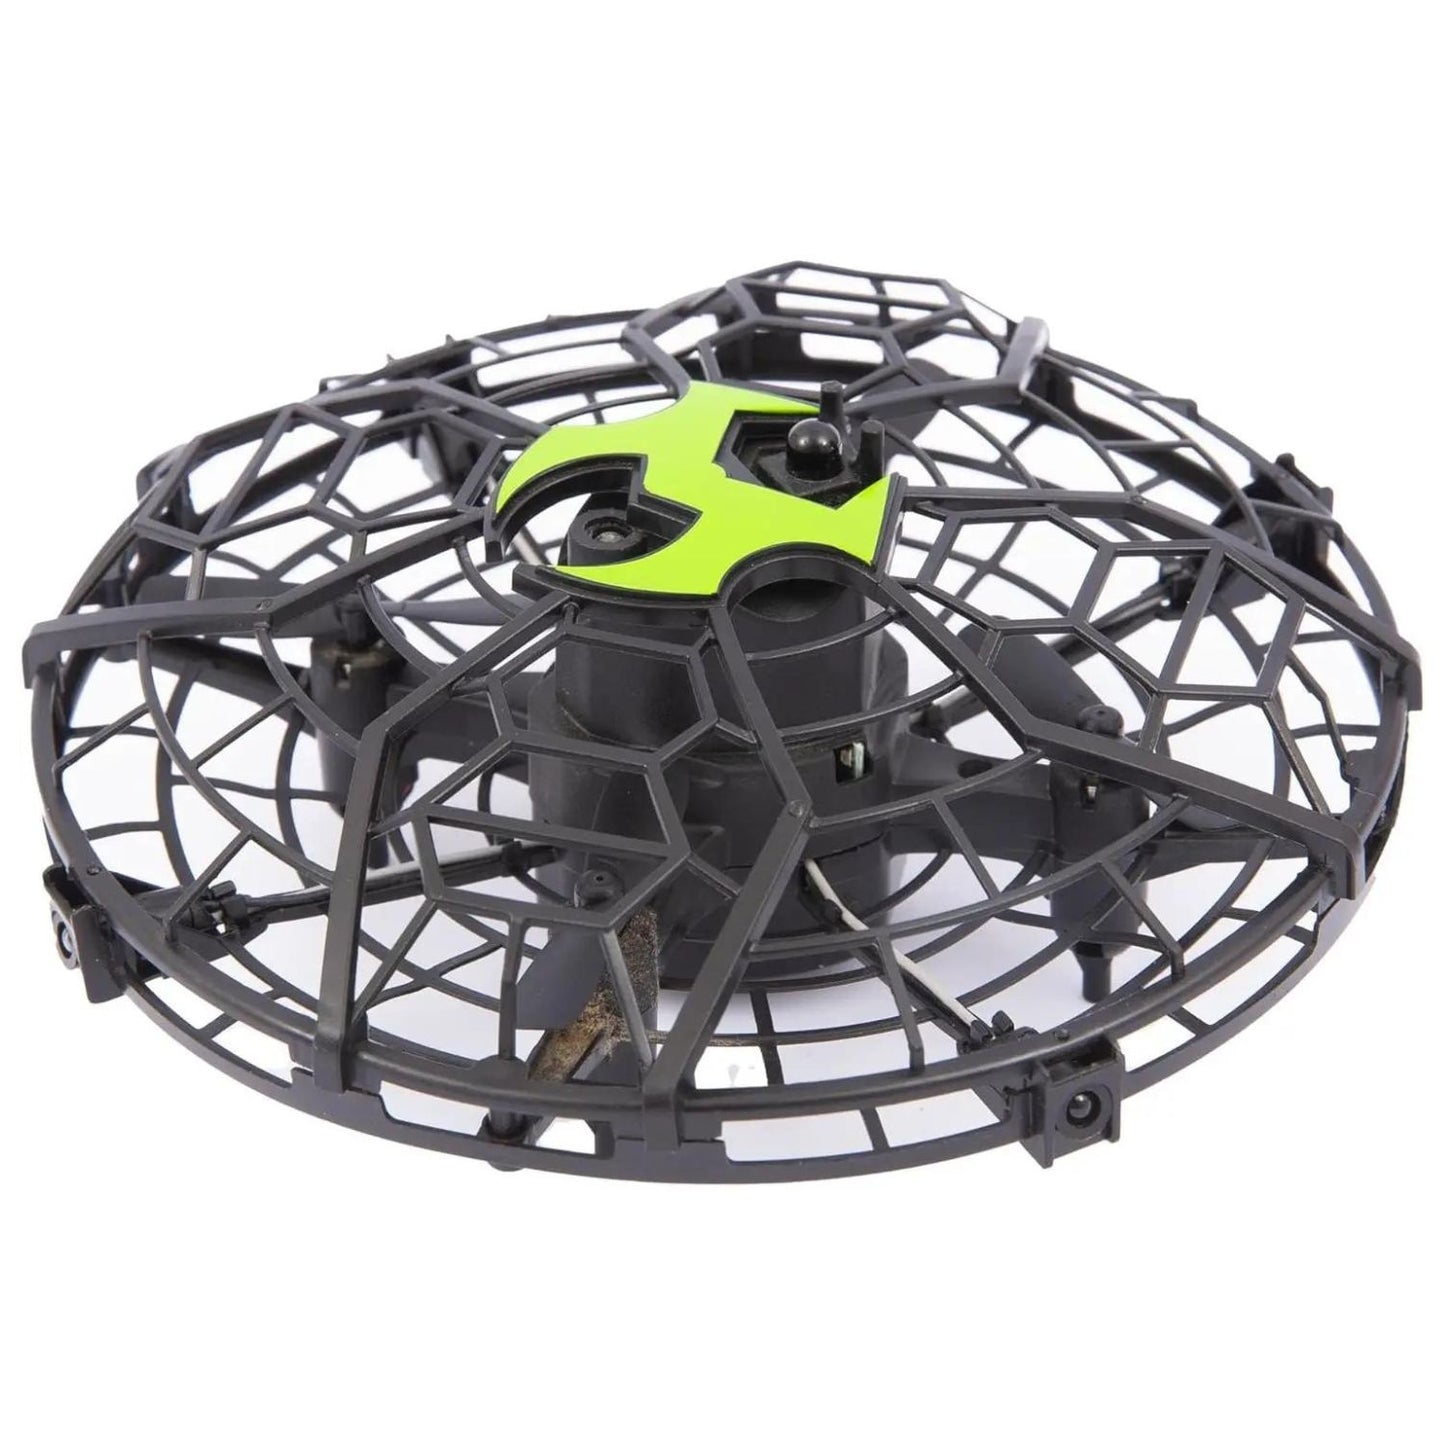 Giochi preziosi - Sky Viper Hover Shpere Drone